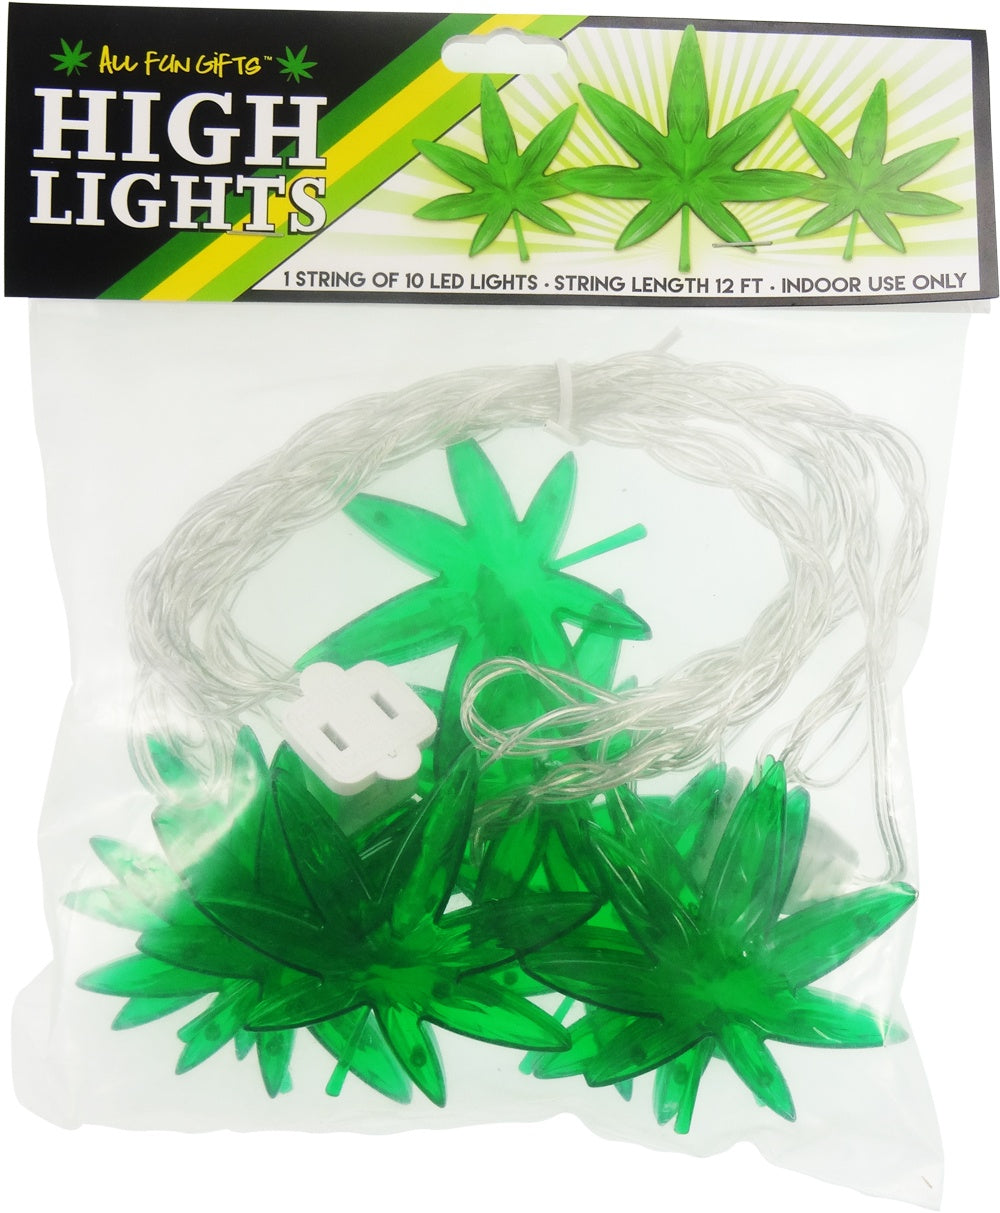 HIGH LIGHTS - 1 STRING OF 10 LEAF LED LIGHTS